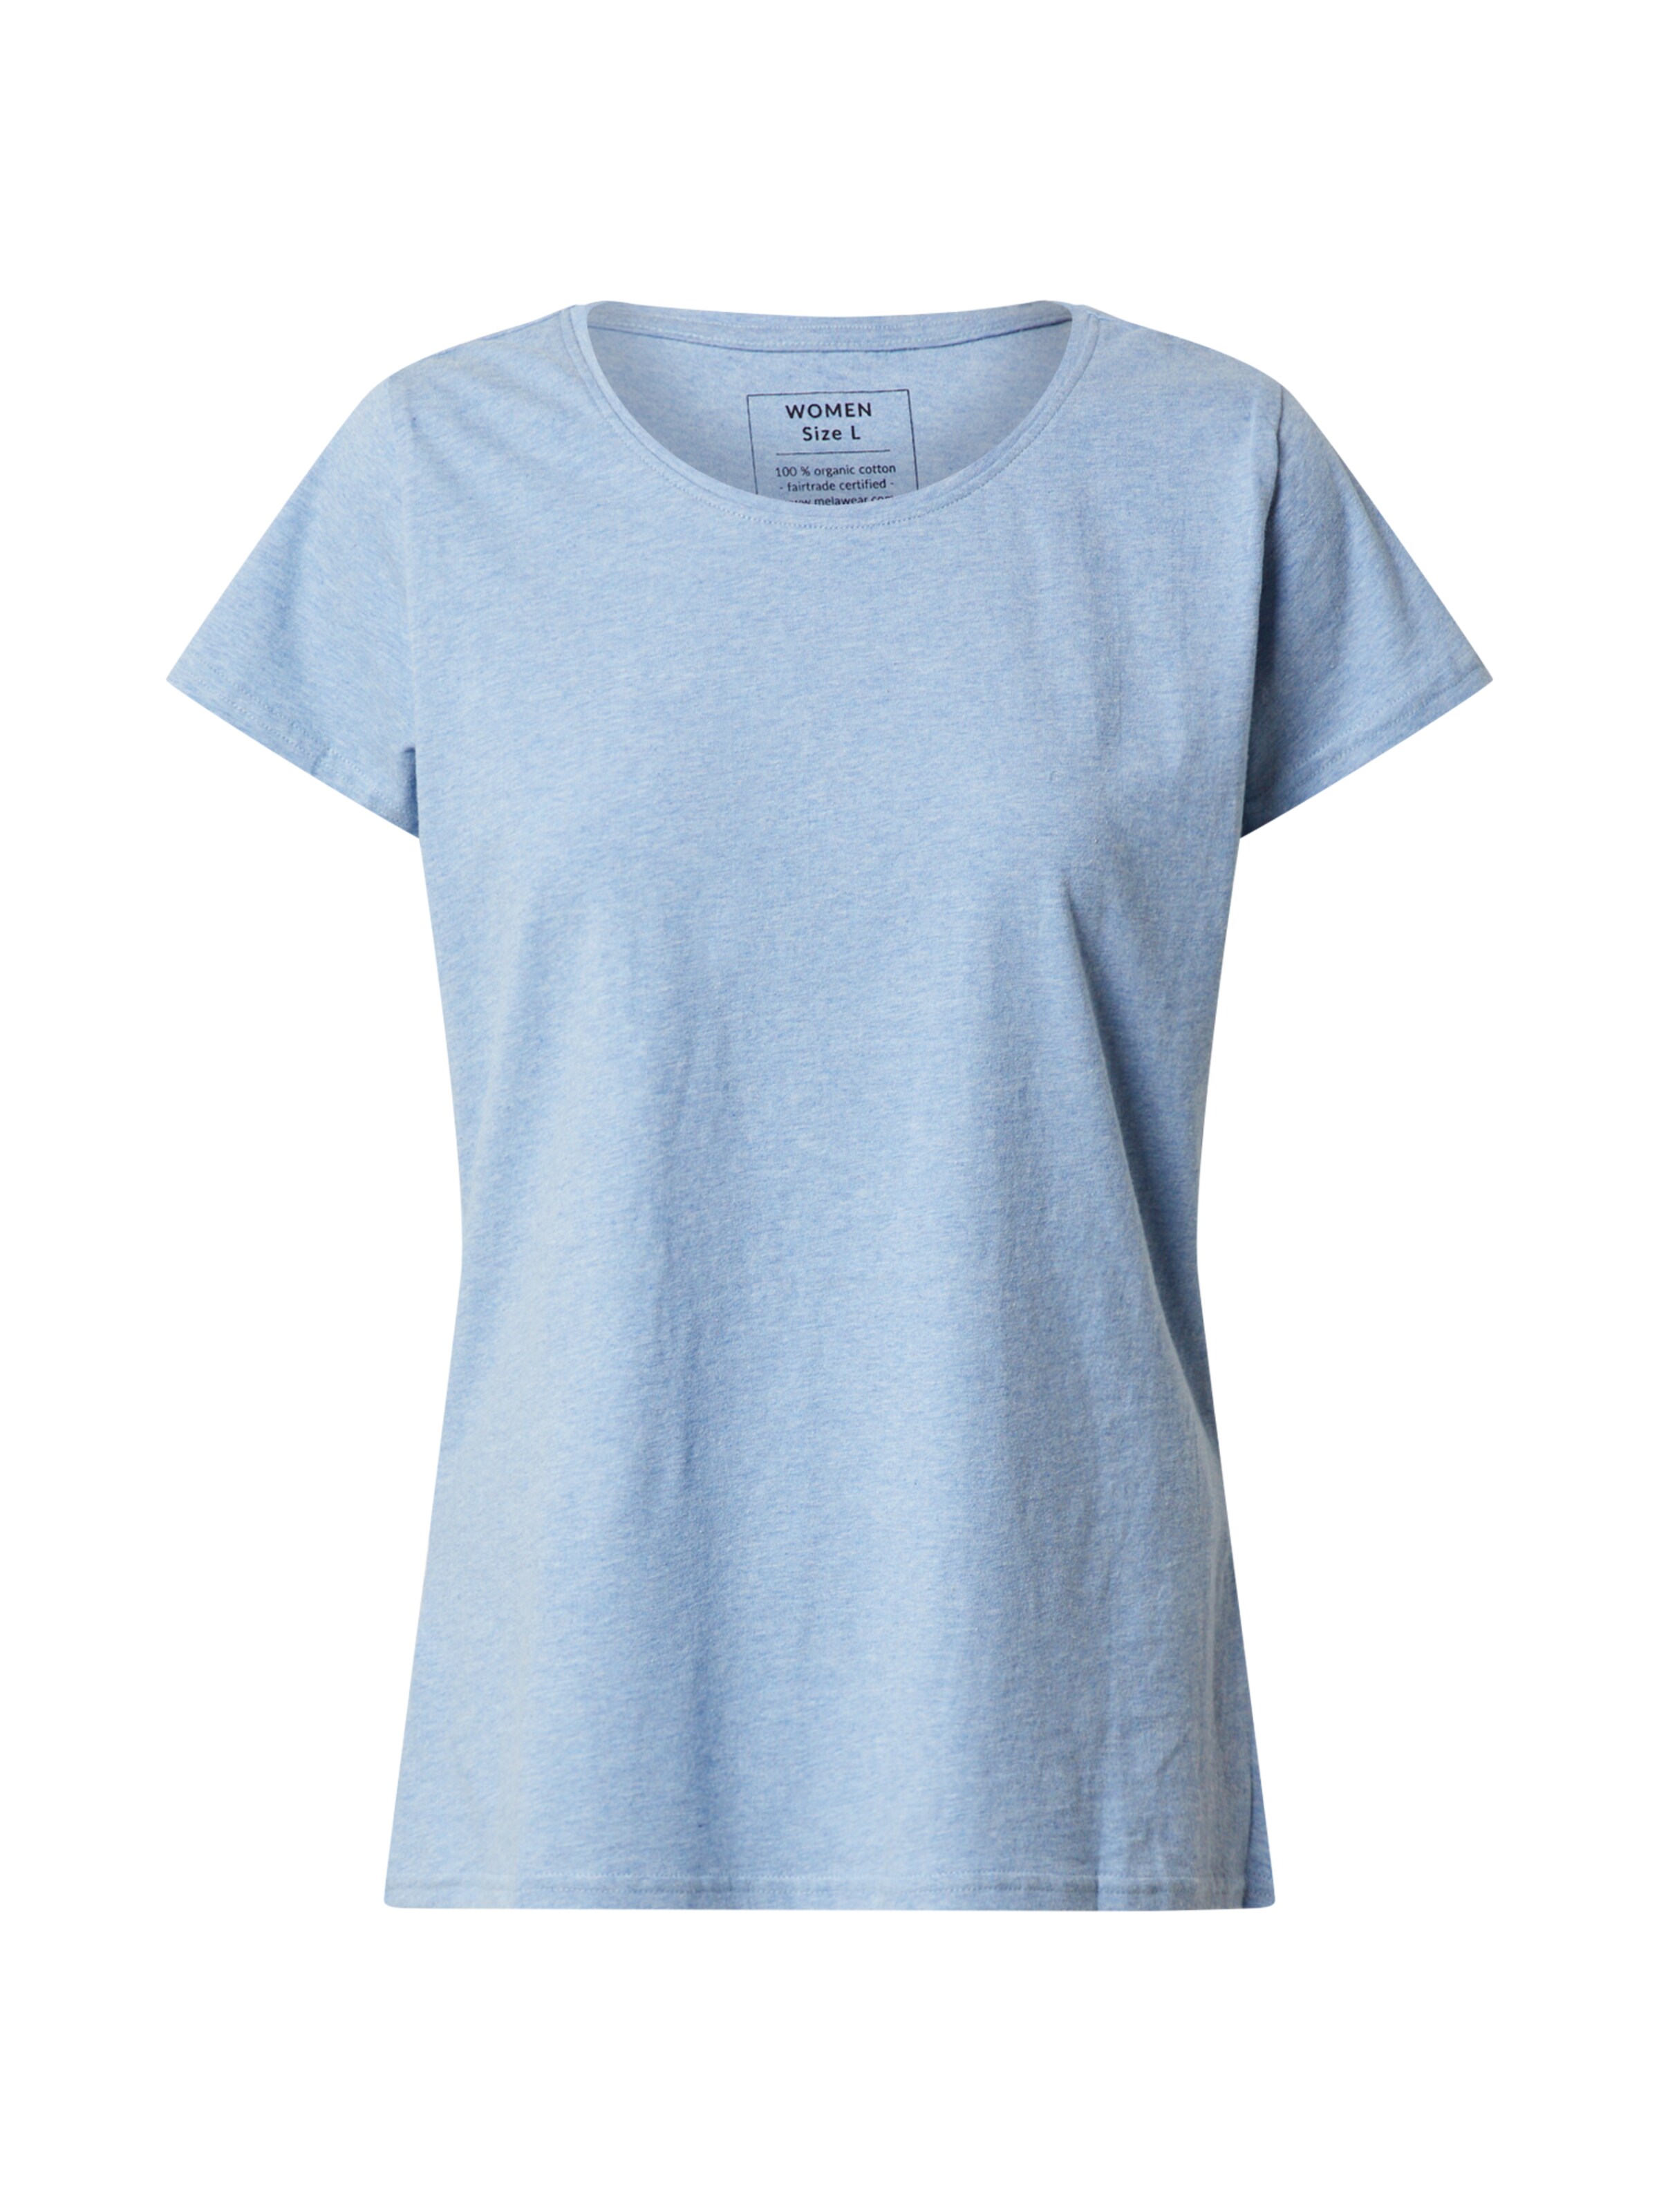 Frauen Shirts & Tops MELAWEAR T-Shirt in Blaumeliert - AX43197